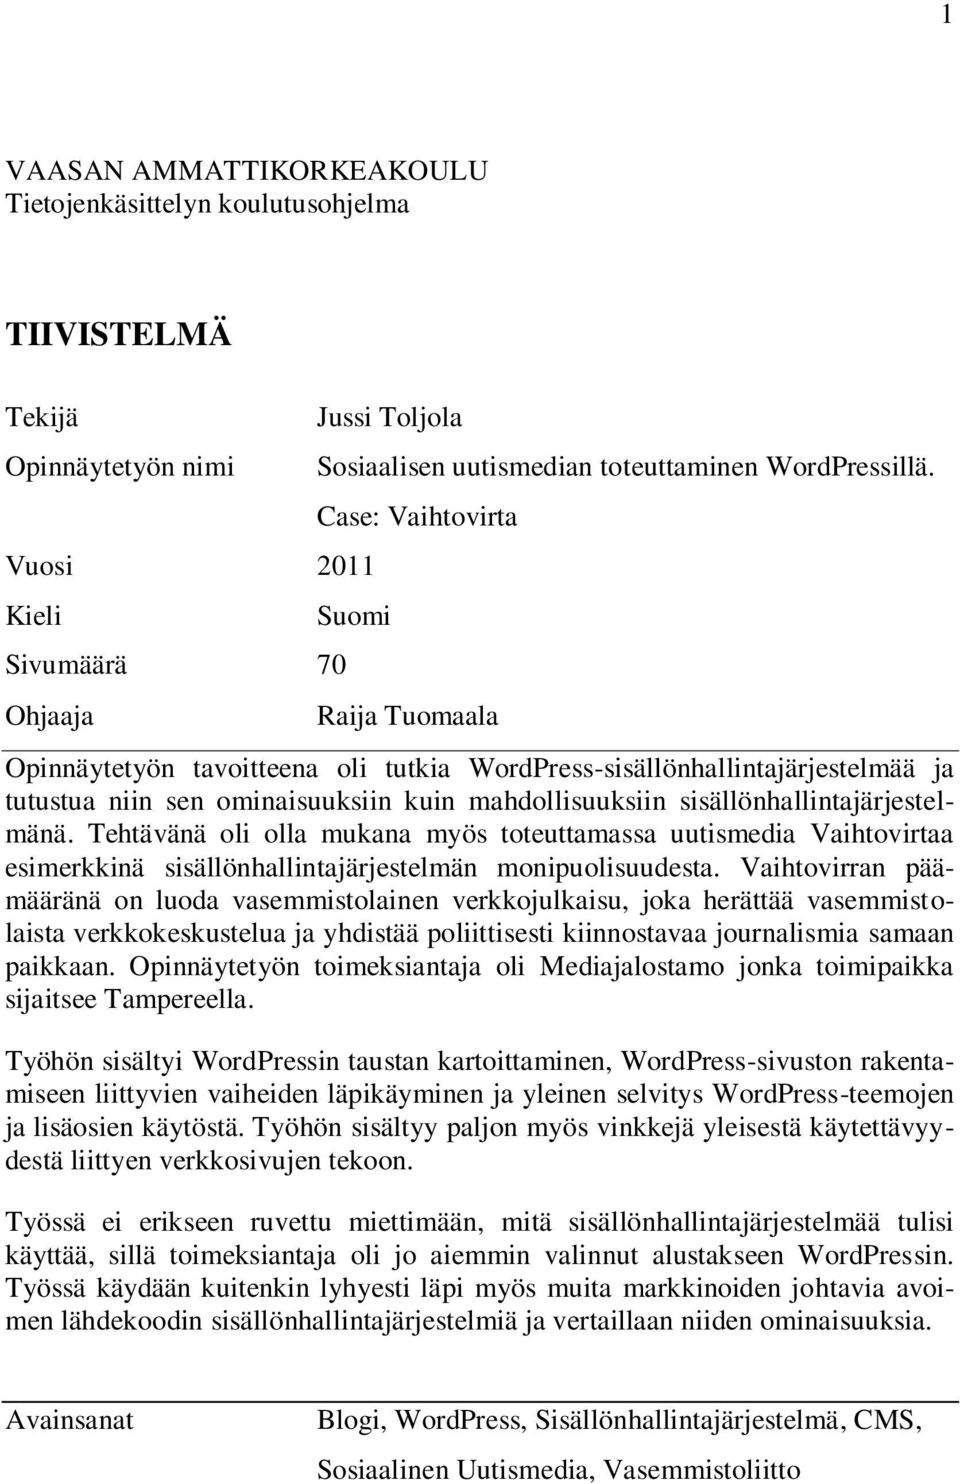 Case: Vaihtovirta Suomi Raija Tuomaala Opinnäytetyön tavoitteena oli tutkia WordPress-sisällönhallintajärjestelmää ja tutustua niin sen ominaisuuksiin kuin mahdollisuuksiin